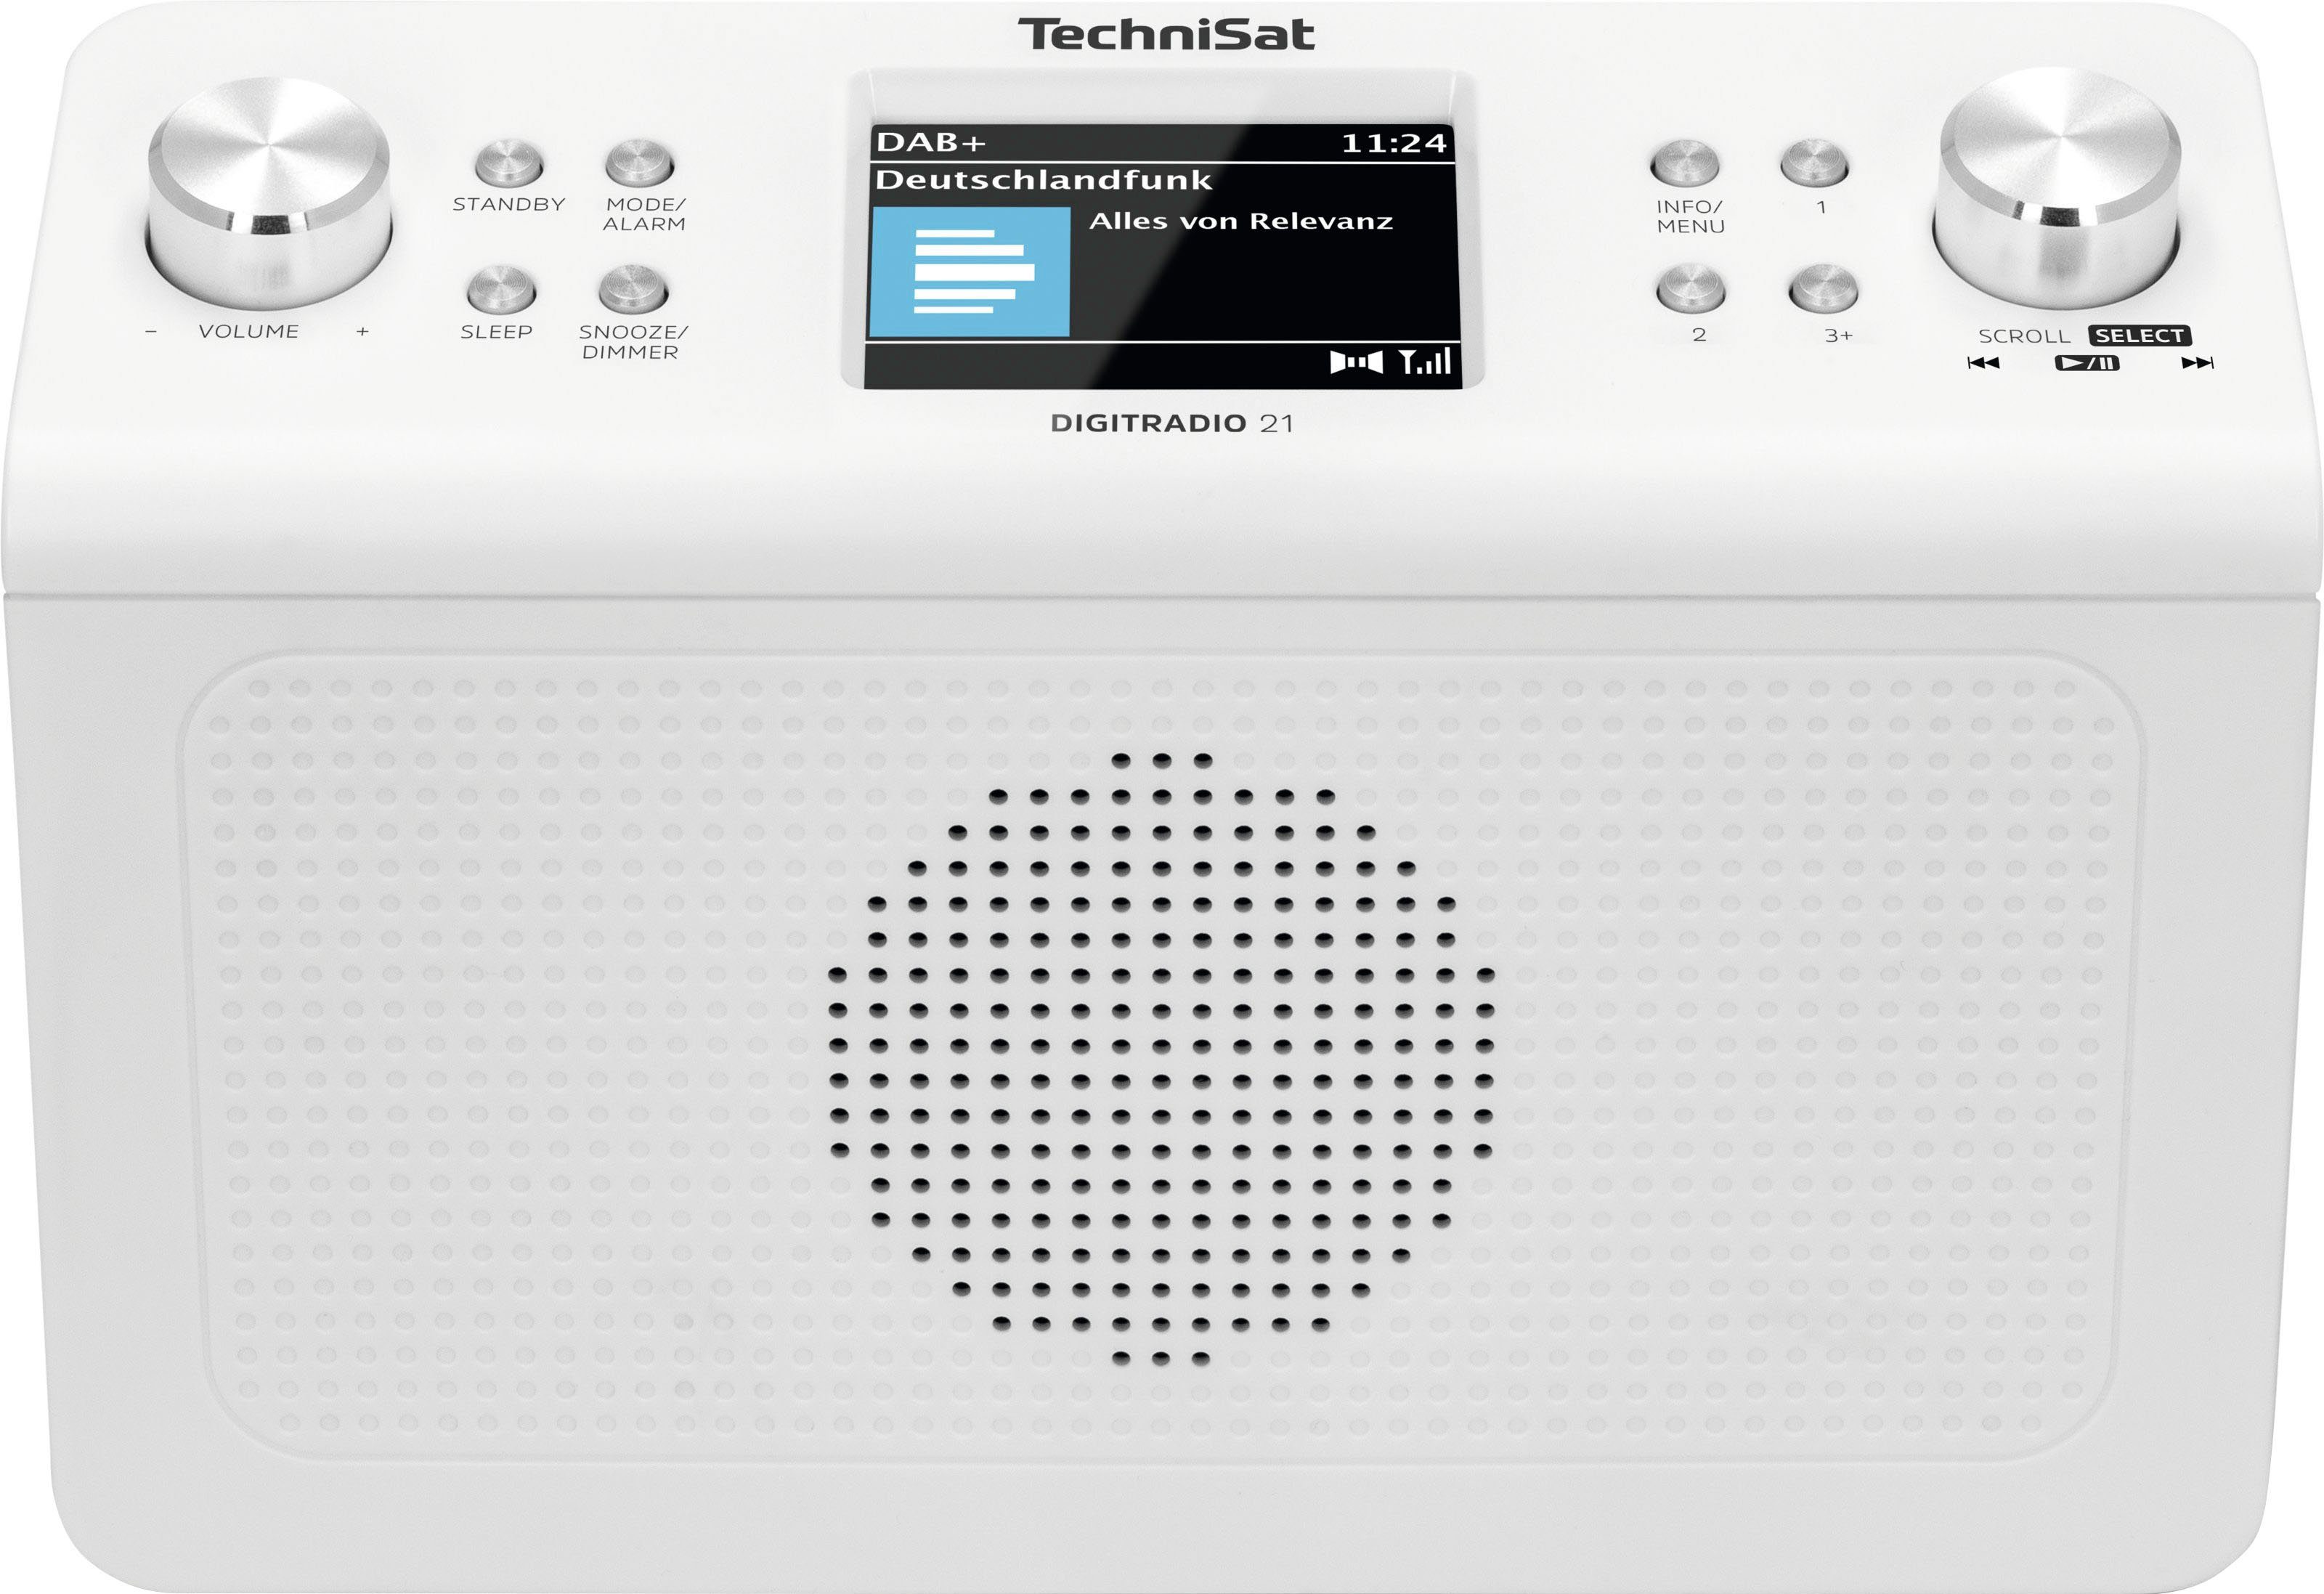 TechniSat DIGITRADIO 21 Küchen-Radio (Digitalradio RDS, (DAB), Unterbau-Radio,Küchen-Radio) weiß mit 2 W, UKW